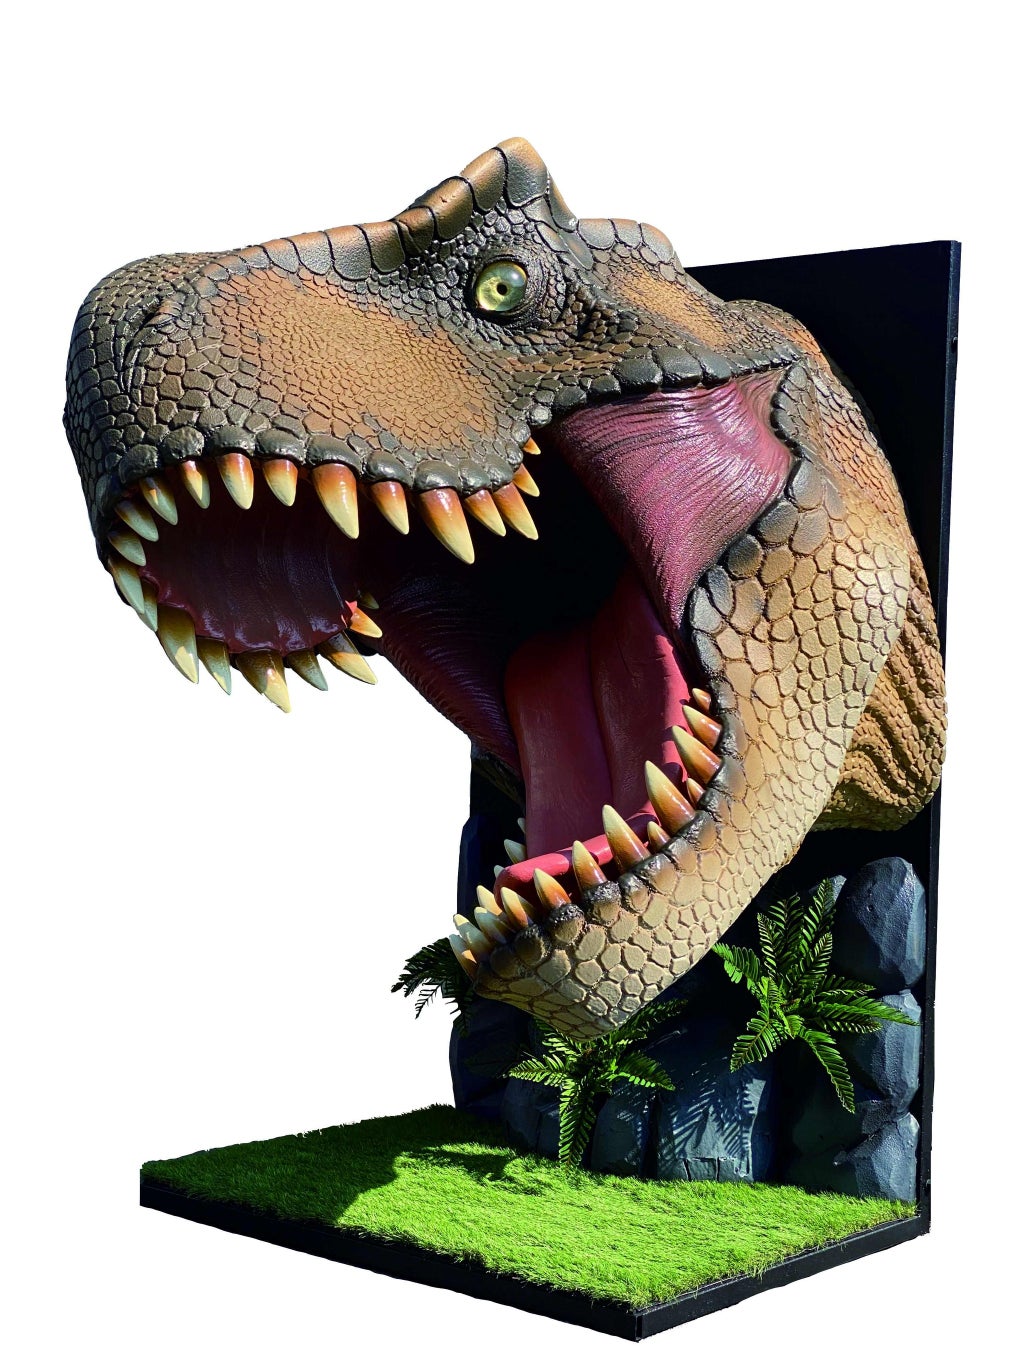 ティラノサウルスの顔